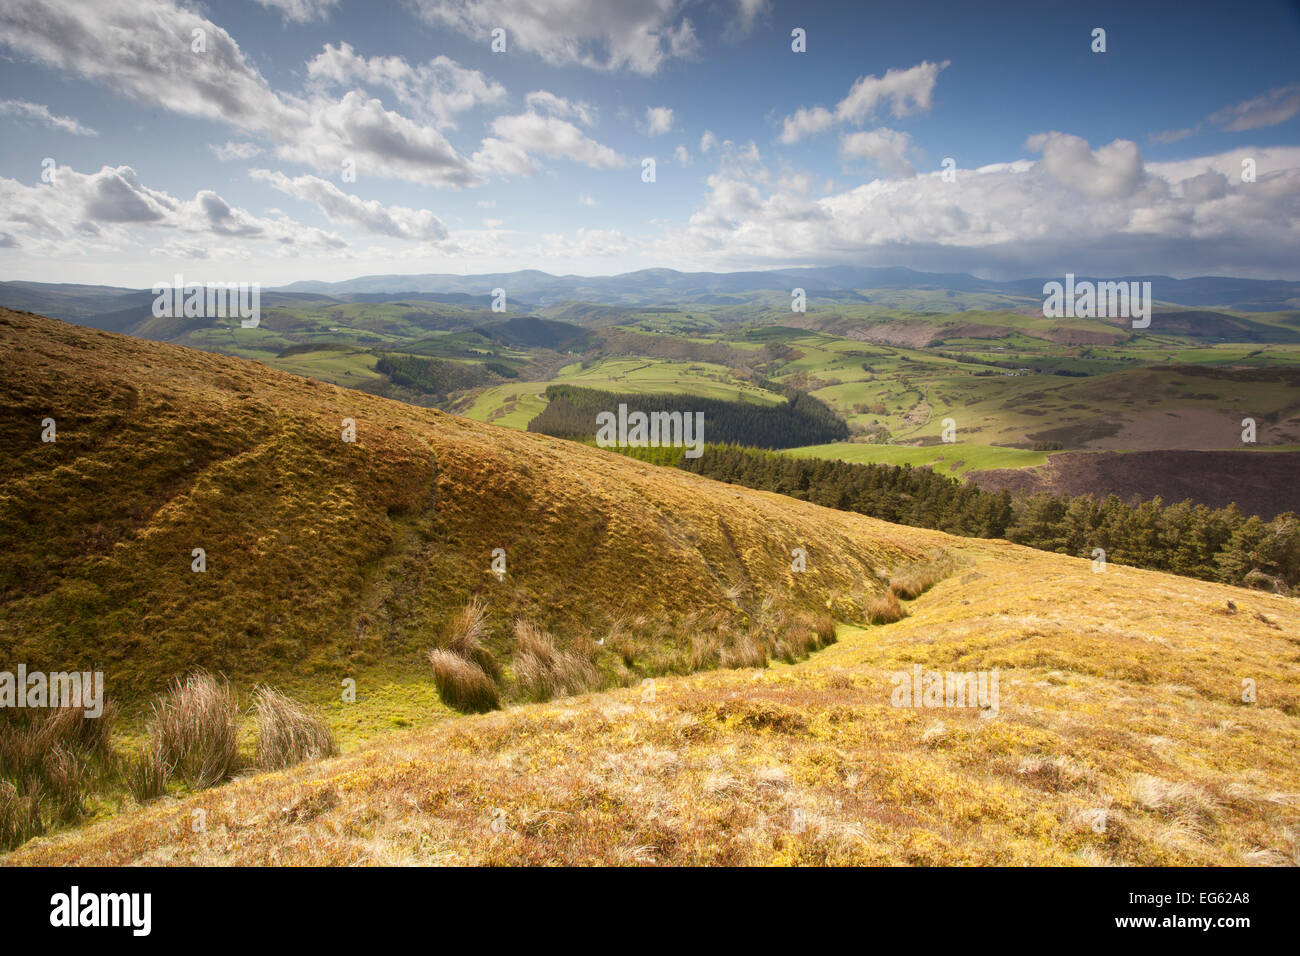 Vista del paisaje agrícola de montaña en las montañas Cambrian, parte del proyecto Living Landscape Pumlumon, Ceredigion, Gales, mayo de 2012. Foto de stock